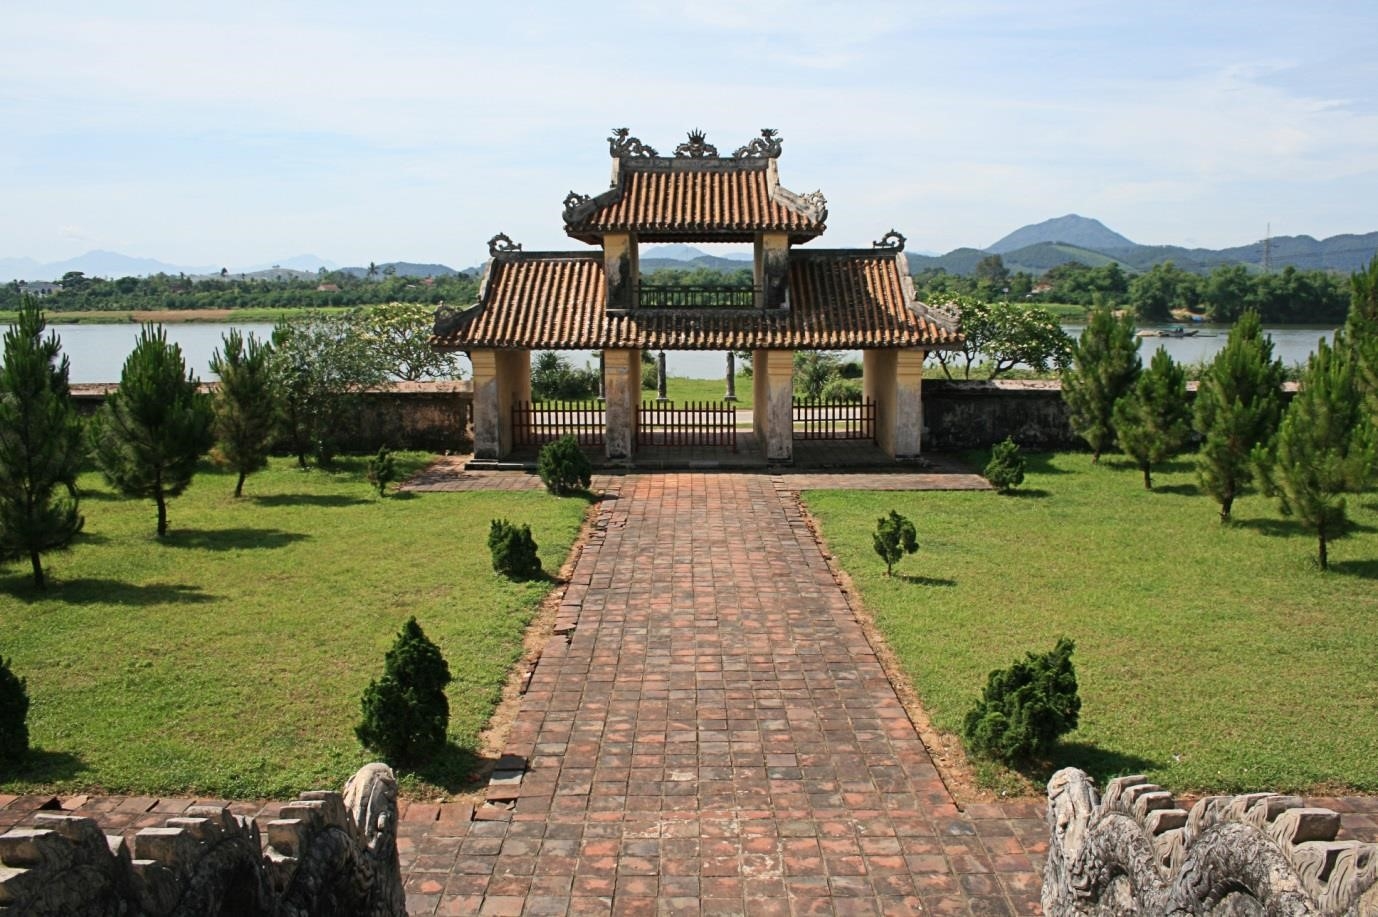 Văn miếu Huế là một địa điểm du lịch nổi tiếng ở thành phố Huế, Việt Nam. Nơi đây được xây dựng vào đầu thế kỷ 19 dưới triều đại của vua Gia Long. Văn miếu là nơi tôn vinh và truyền thống giáo dục quan trọng của đất nước Việt Nam từ xa xưa. Các vị giáo sĩ và học giả thường đến đây để tham gia vào các buổi lễ tôn vinh các vị văn học và nhà giáo của quốc gia. Văn miếu Huế có kiến trúc đặc sắc và là một trong những